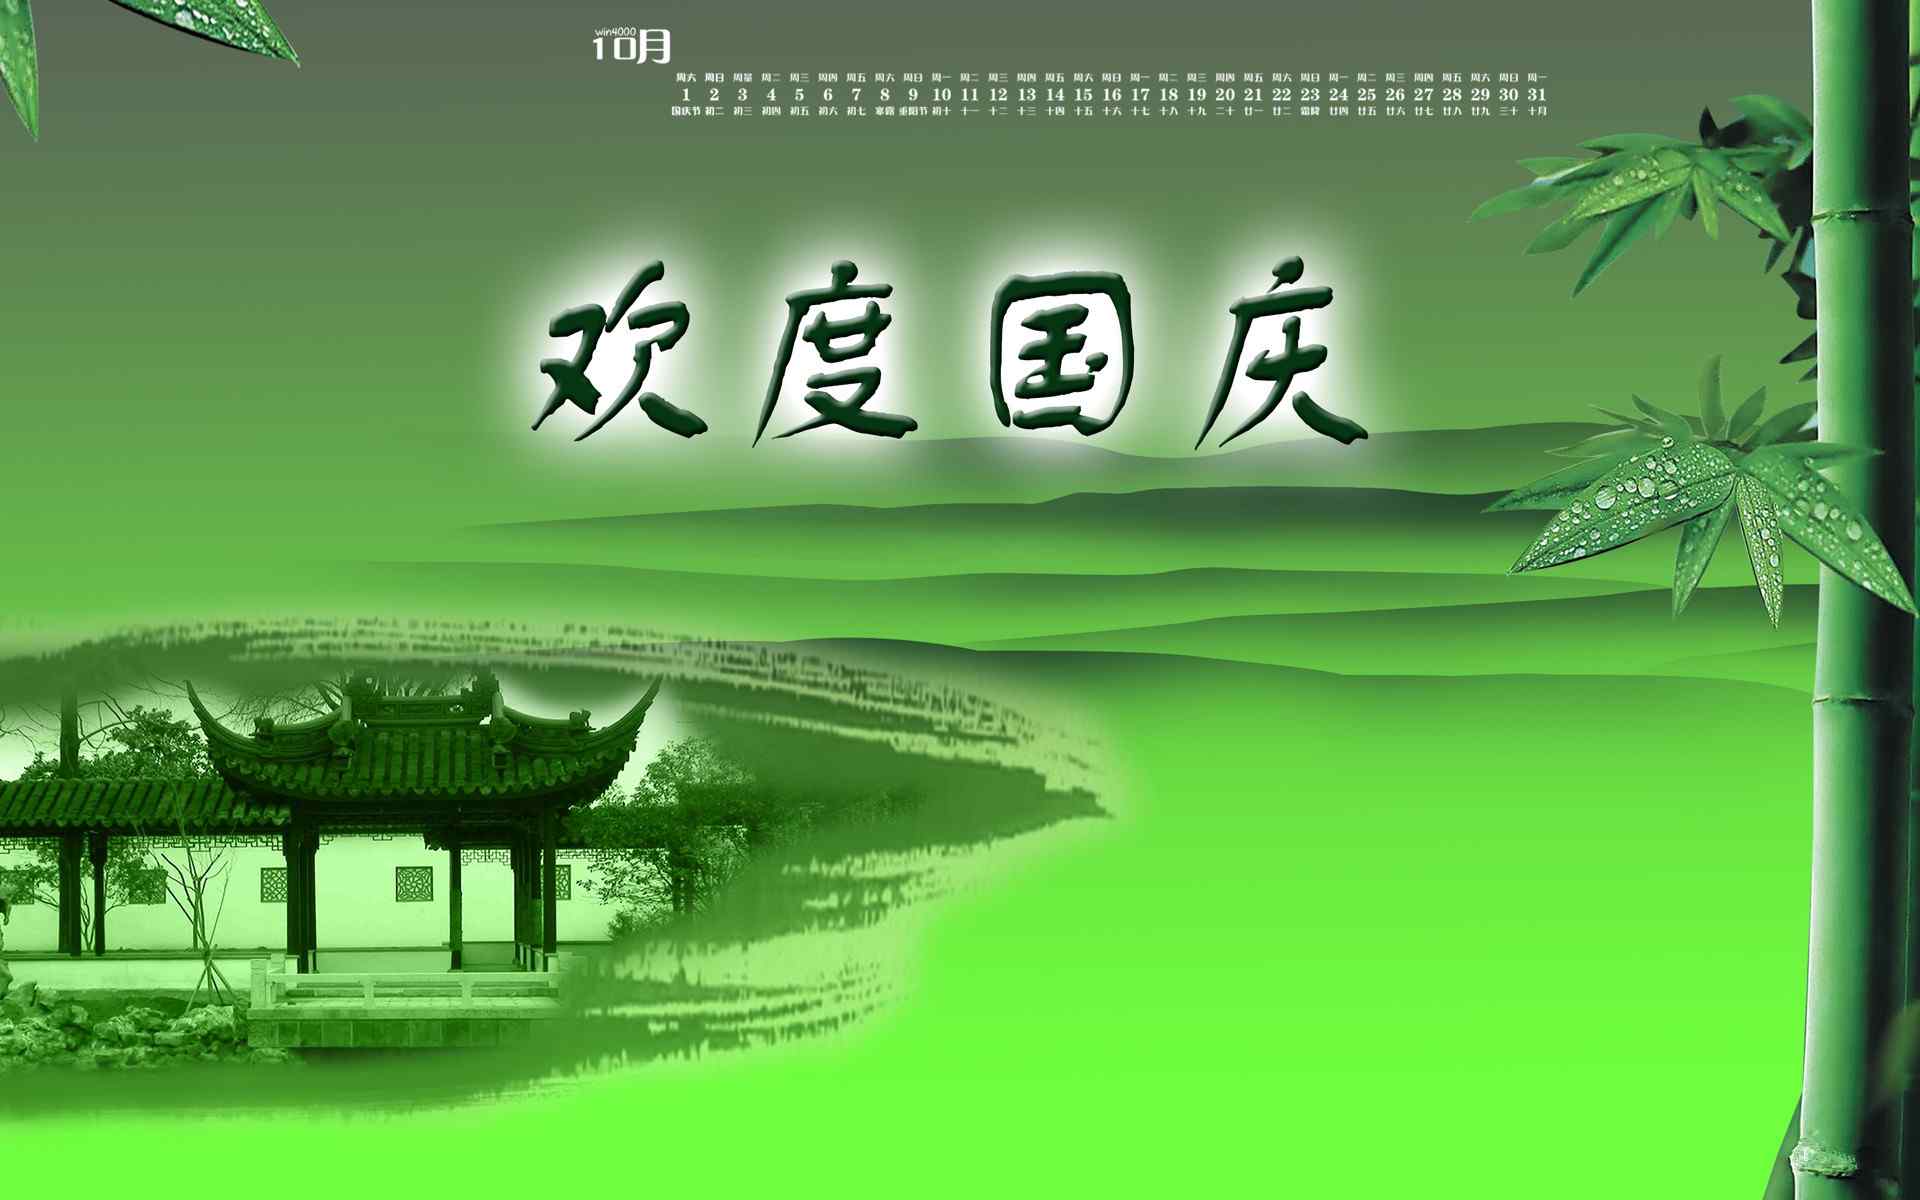 2016年10月日历国庆节中国传统水墨画桌面壁纸图片